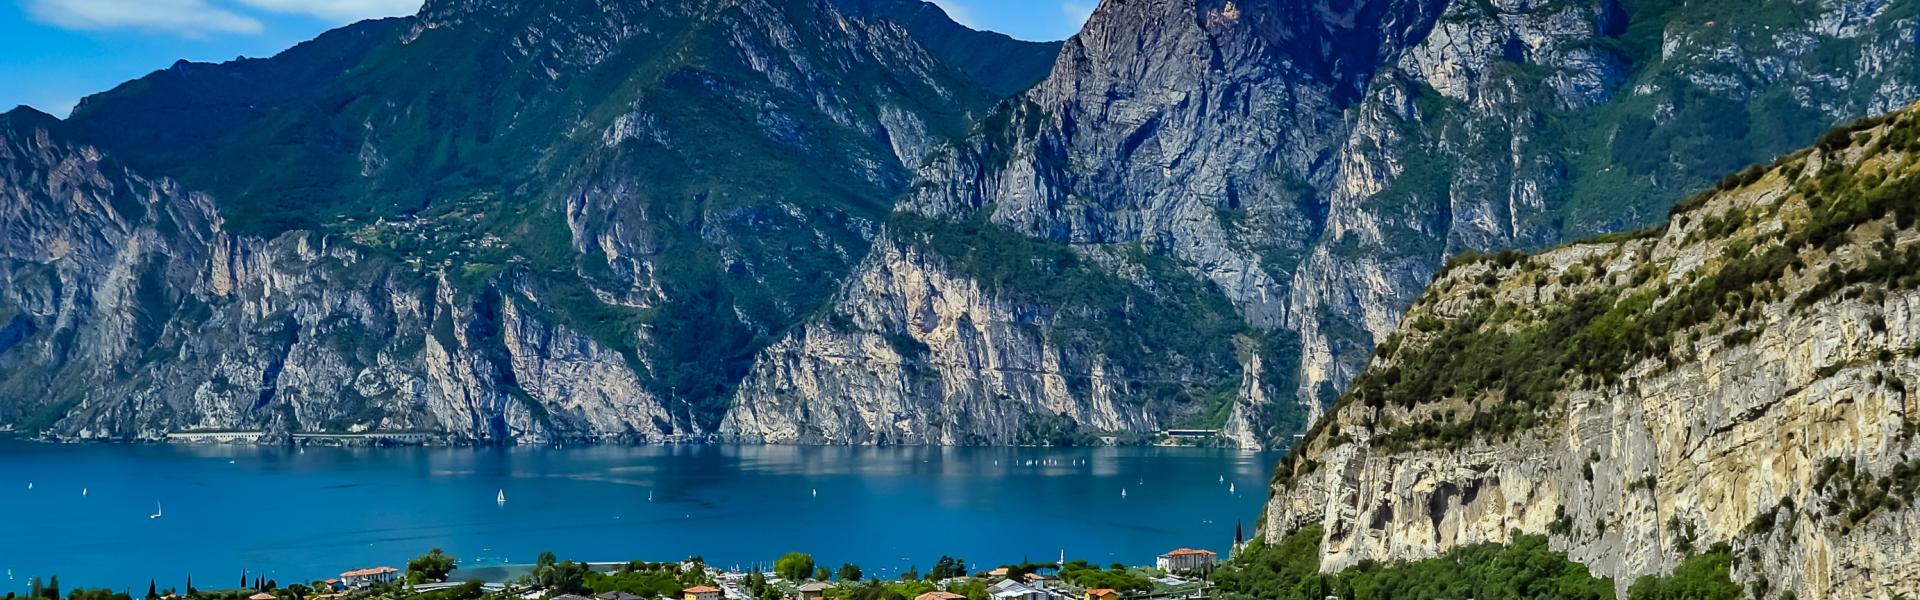 Ferienwohnungen & Ferienhäuser für Urlaub am Gardasee - Casamundo